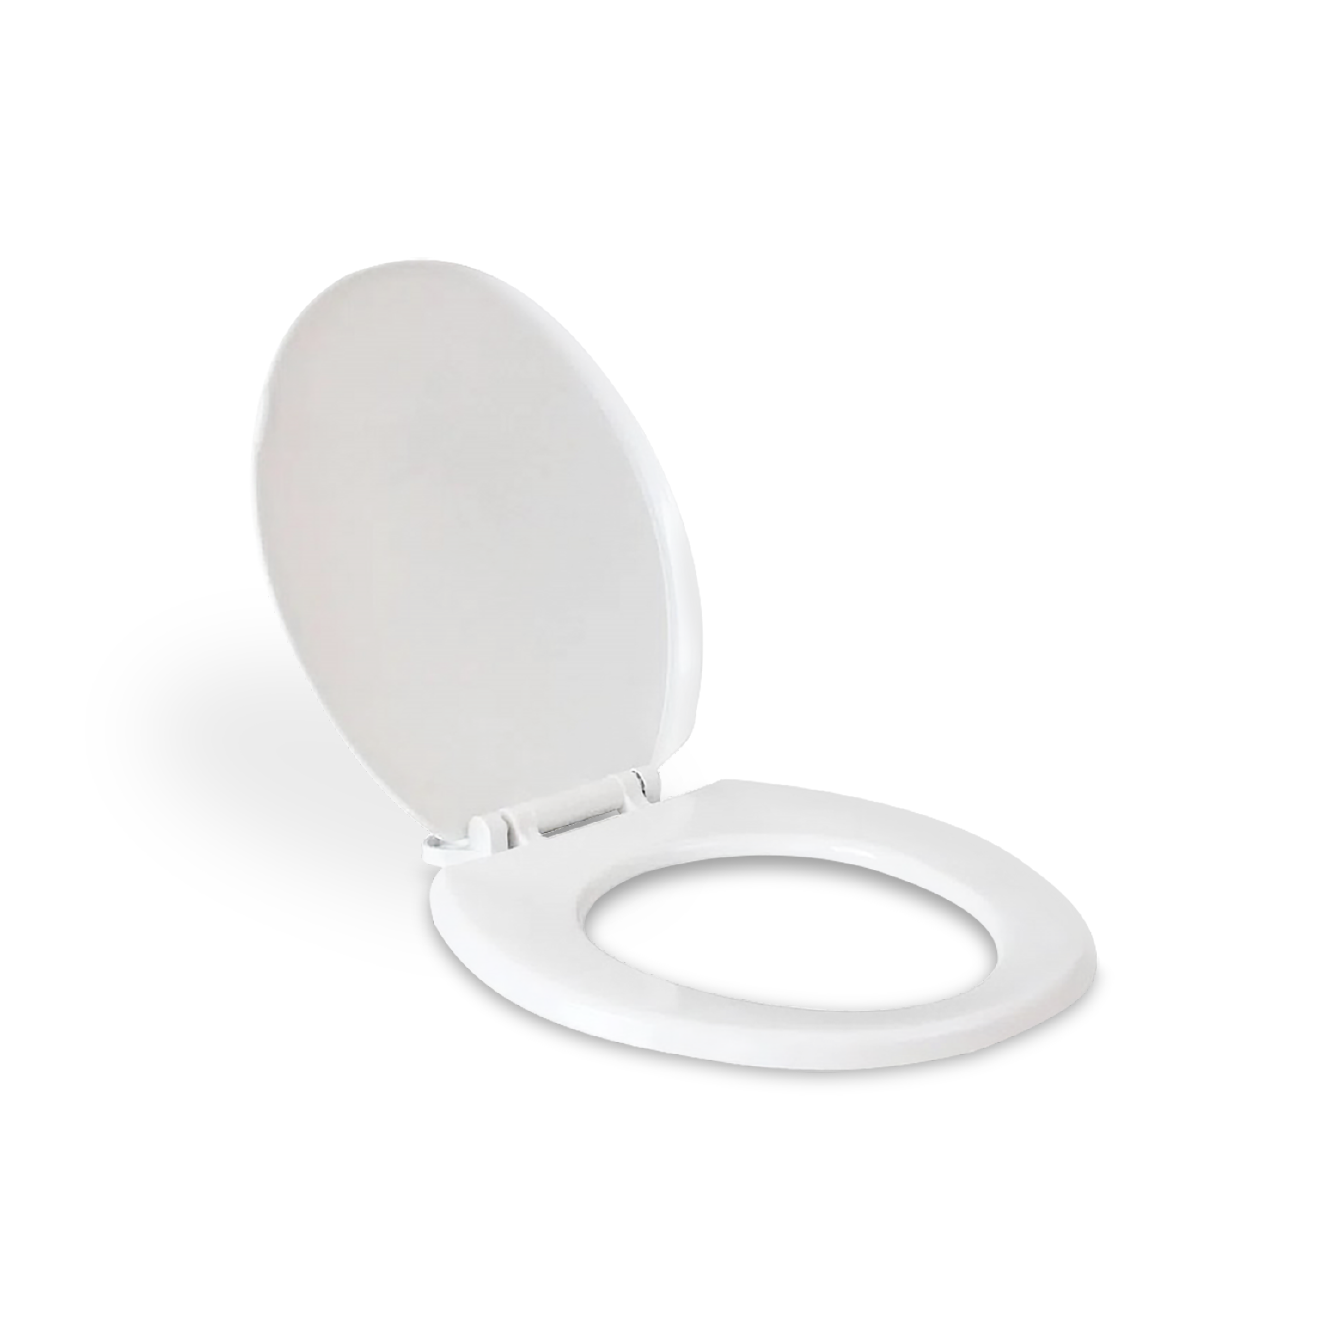 Comprar accesorios para baño Gedy - Tapa Wc Blanco Para Modelo Tesi